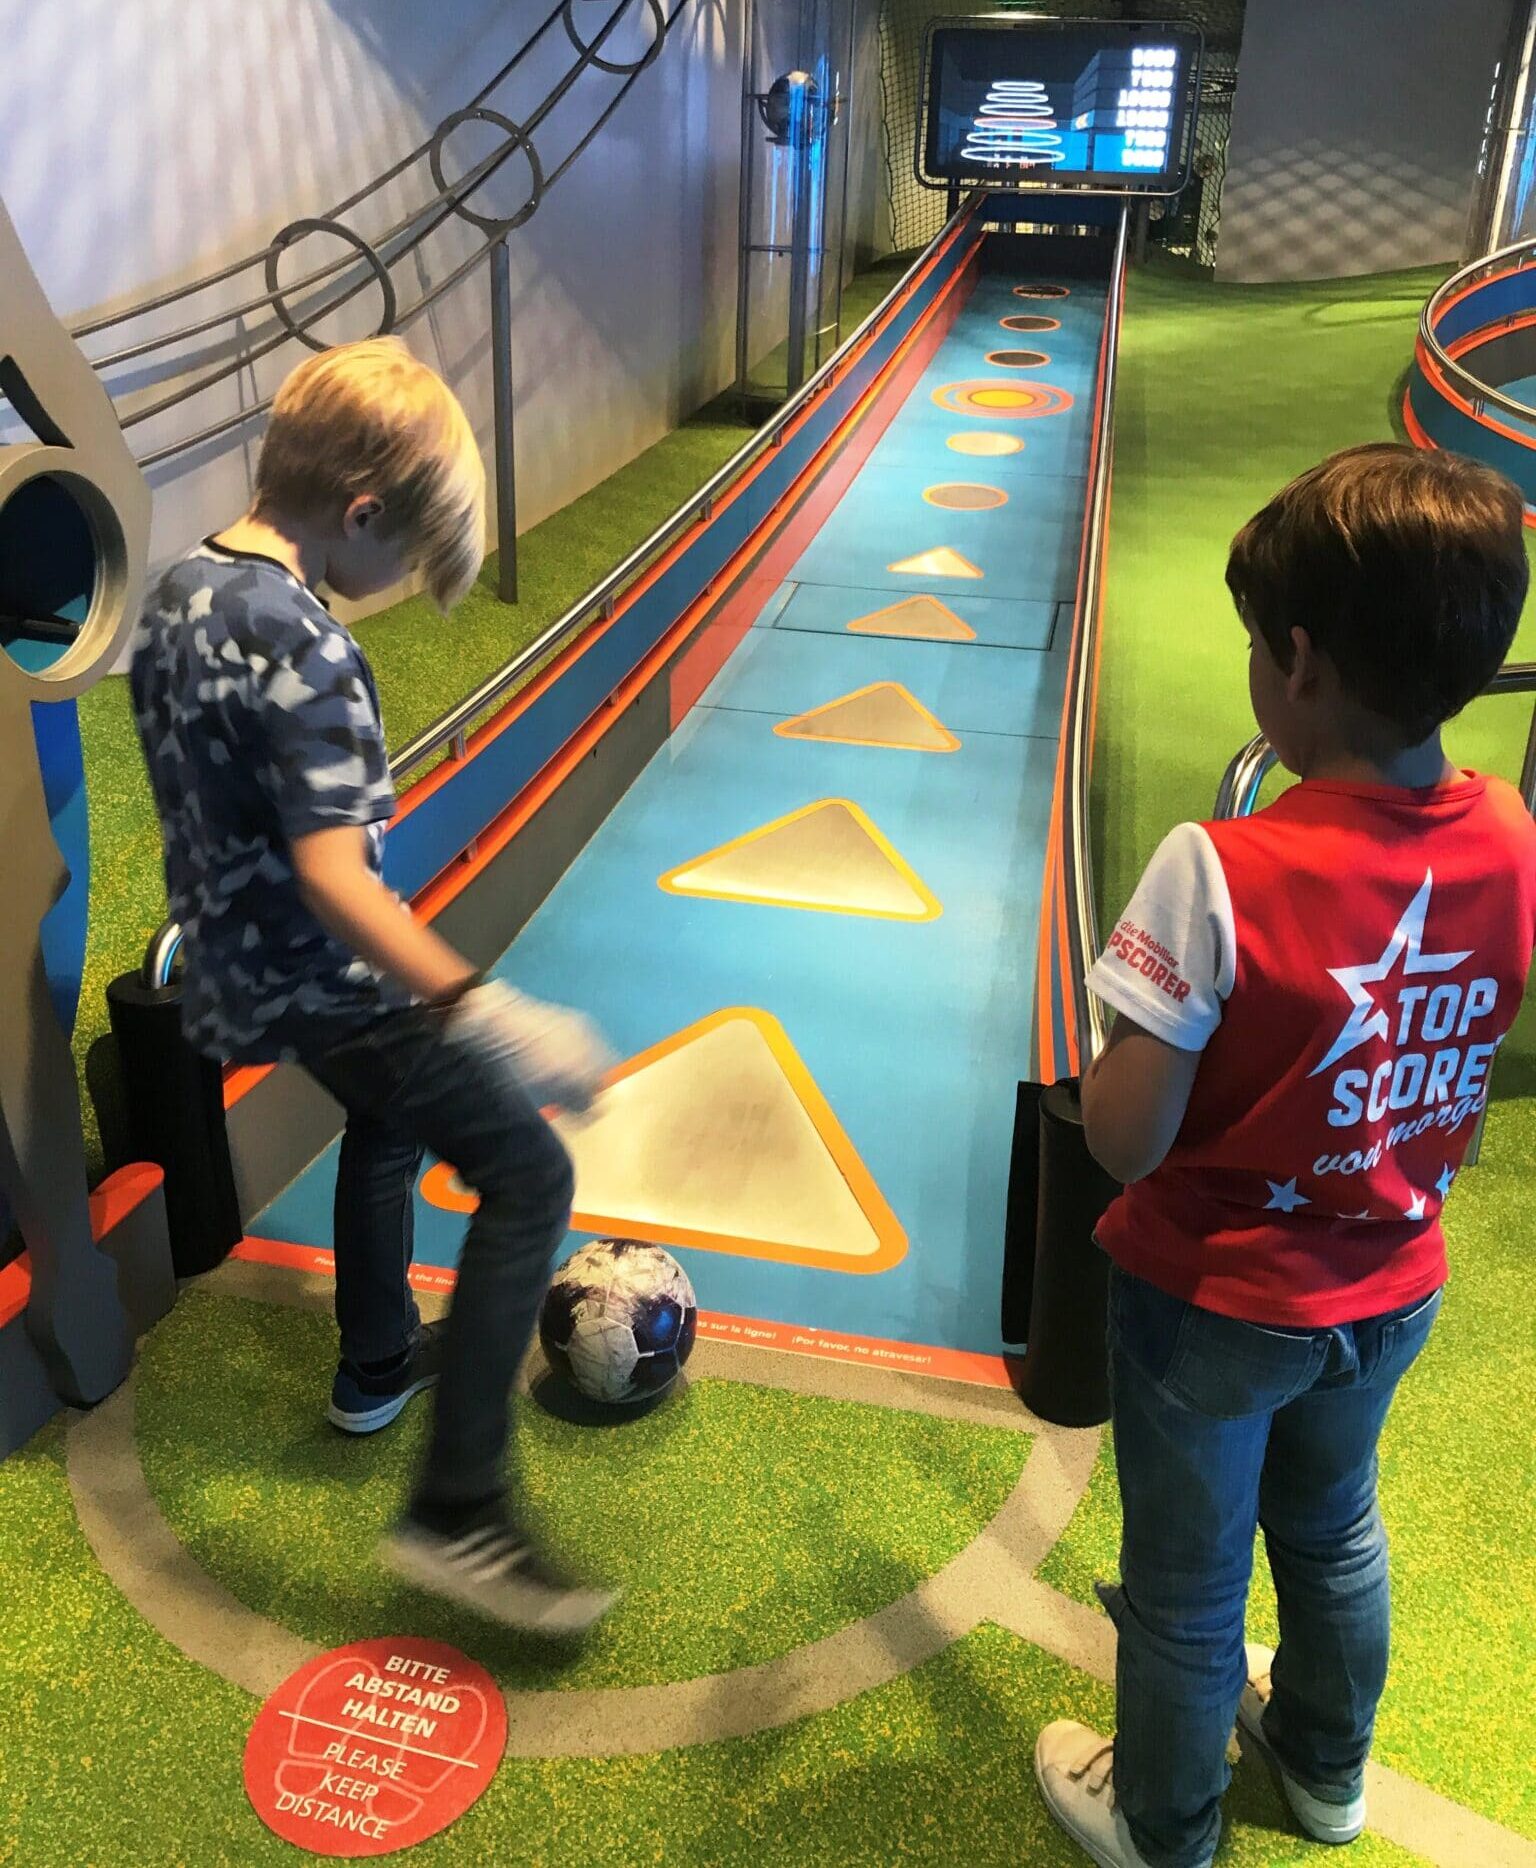 Zürich mit Kindern bei Regen - was tun? FIFA Weltfussball Museum und andere Tipps